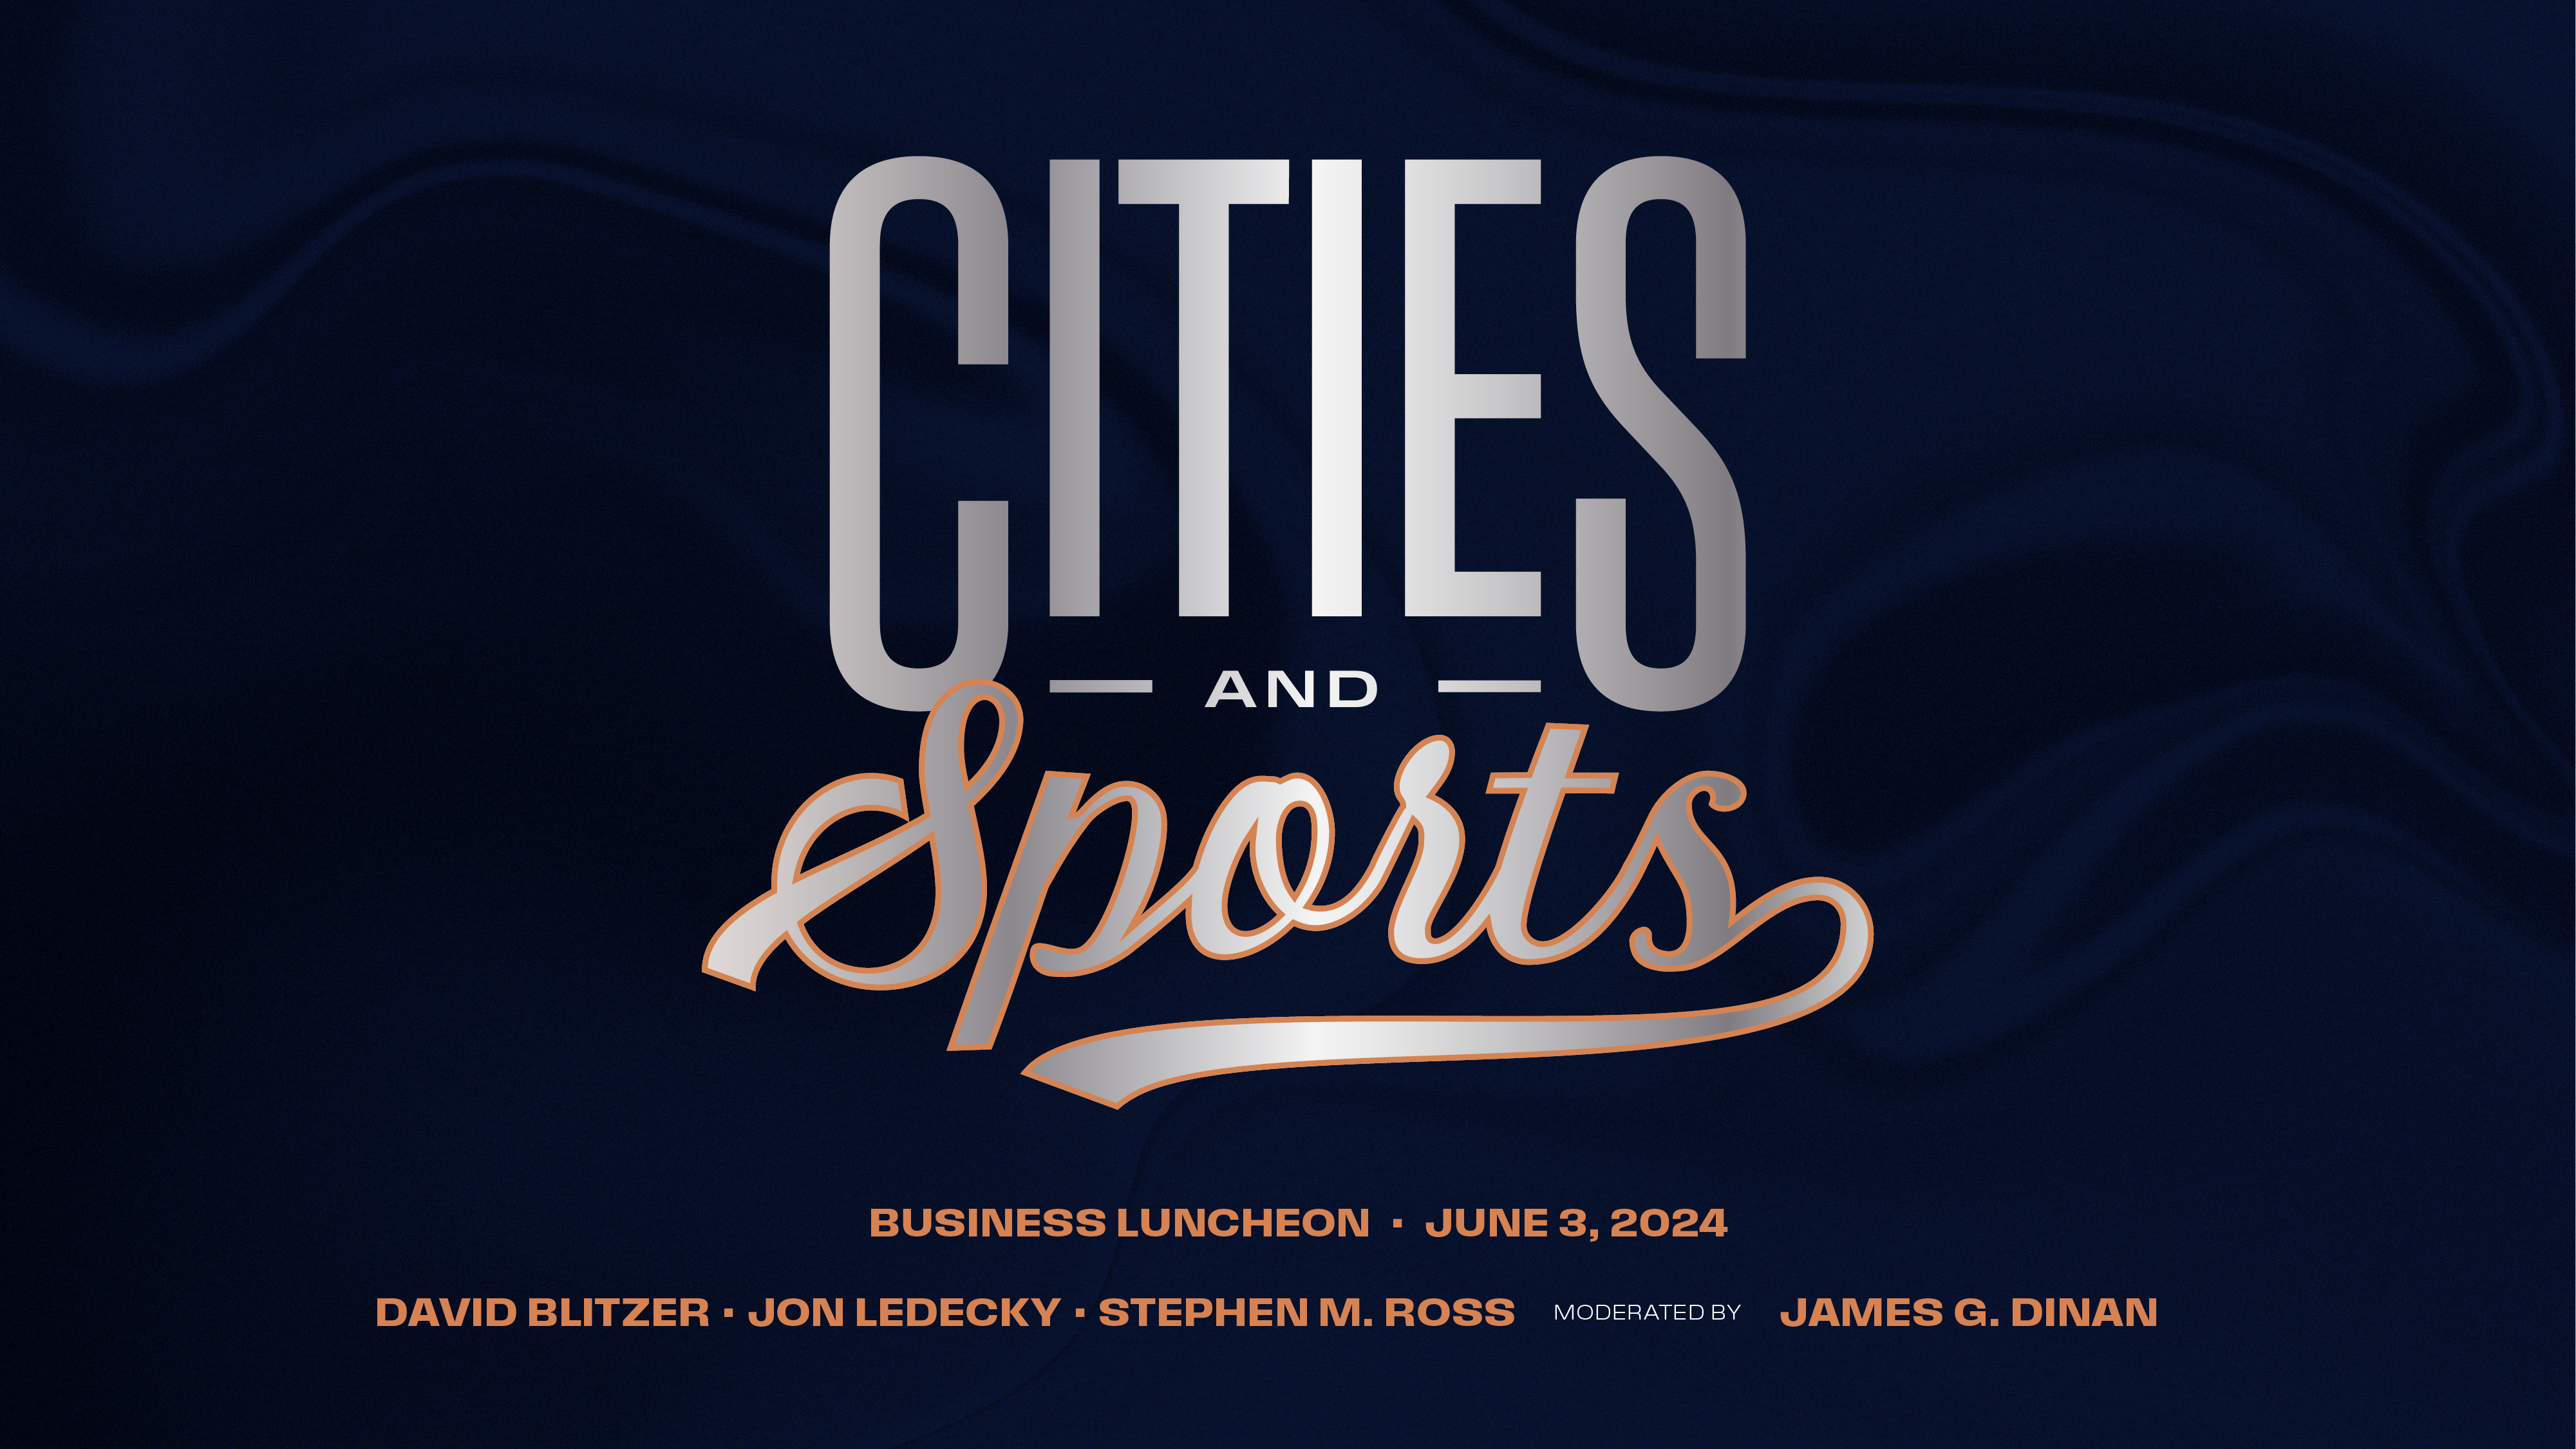 Déjeuner d'affaires Villes et Sports le 3 juin avec David Blitzer, Jon Ledecky, Stephen M. Ross et James G. Dinan